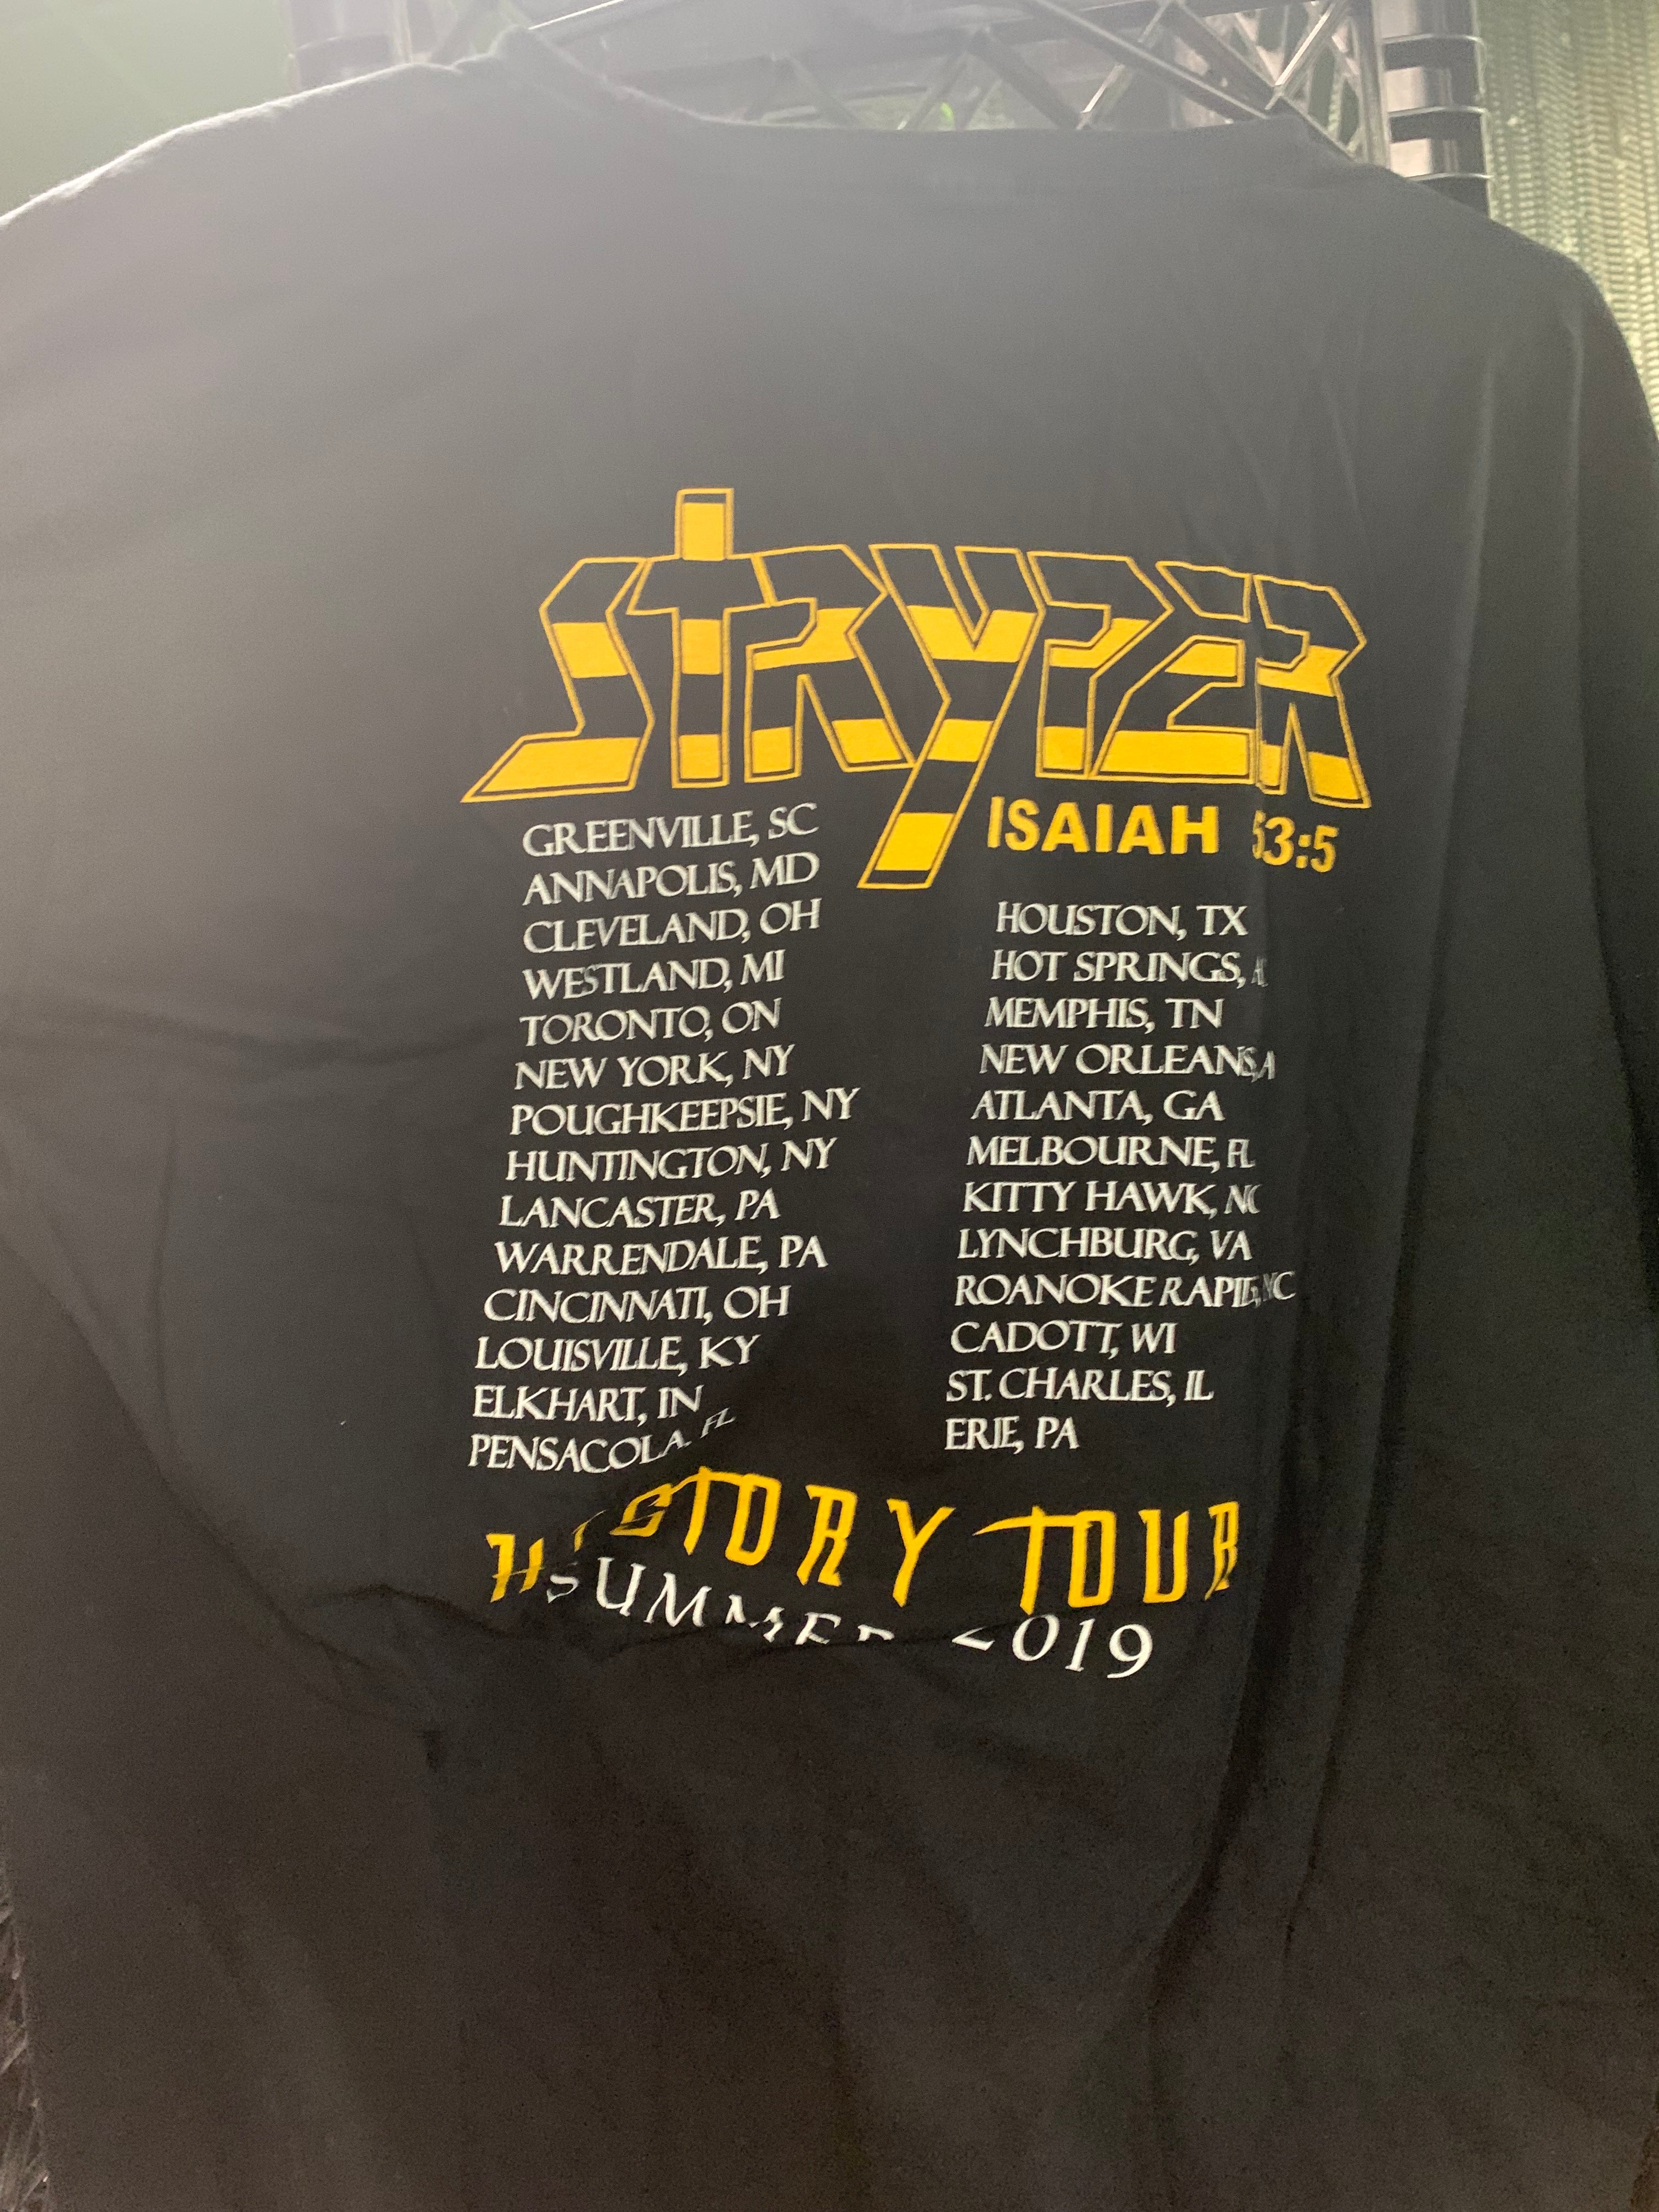 Stryker History Tour Summer 2019 T-Shirt, Black, XL